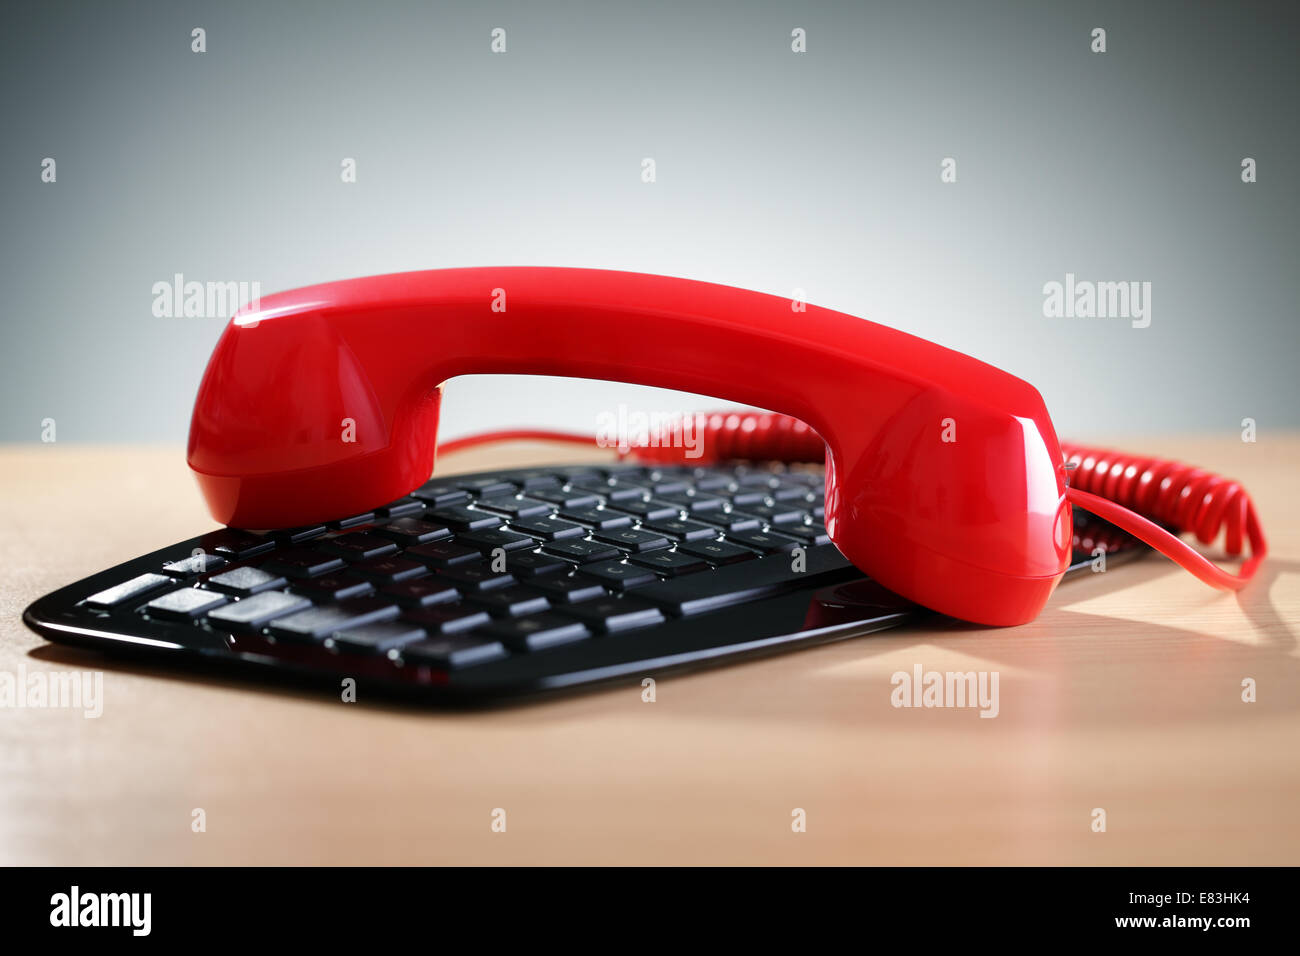 Telefono rosso del ricevitore sulla tastiera del computer concetto per internet o telefono voice over ip Foto Stock